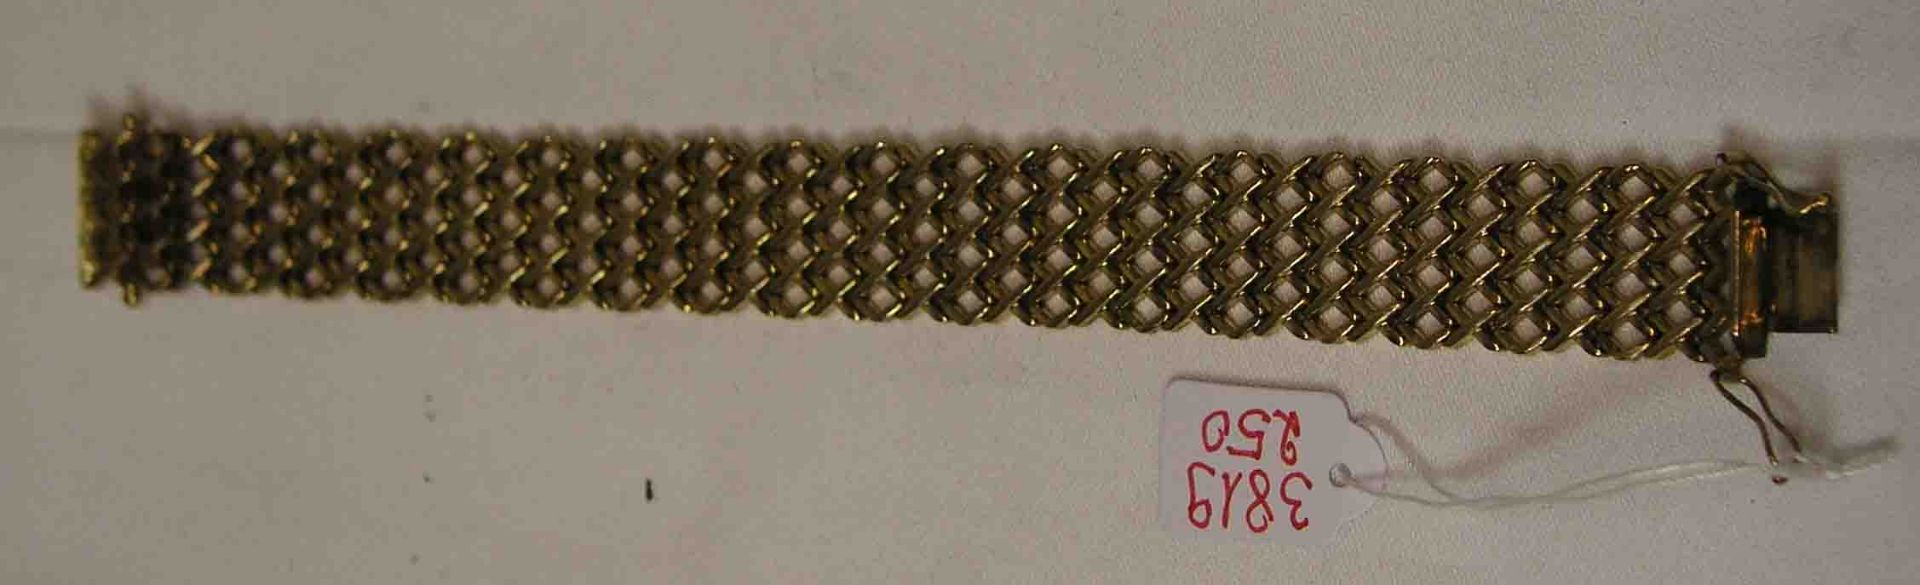 Armband. 8 Kt. Gold. Breite Glieder in Durchbruchsoptik. Länge: 19cm, 32,2 Gramm.